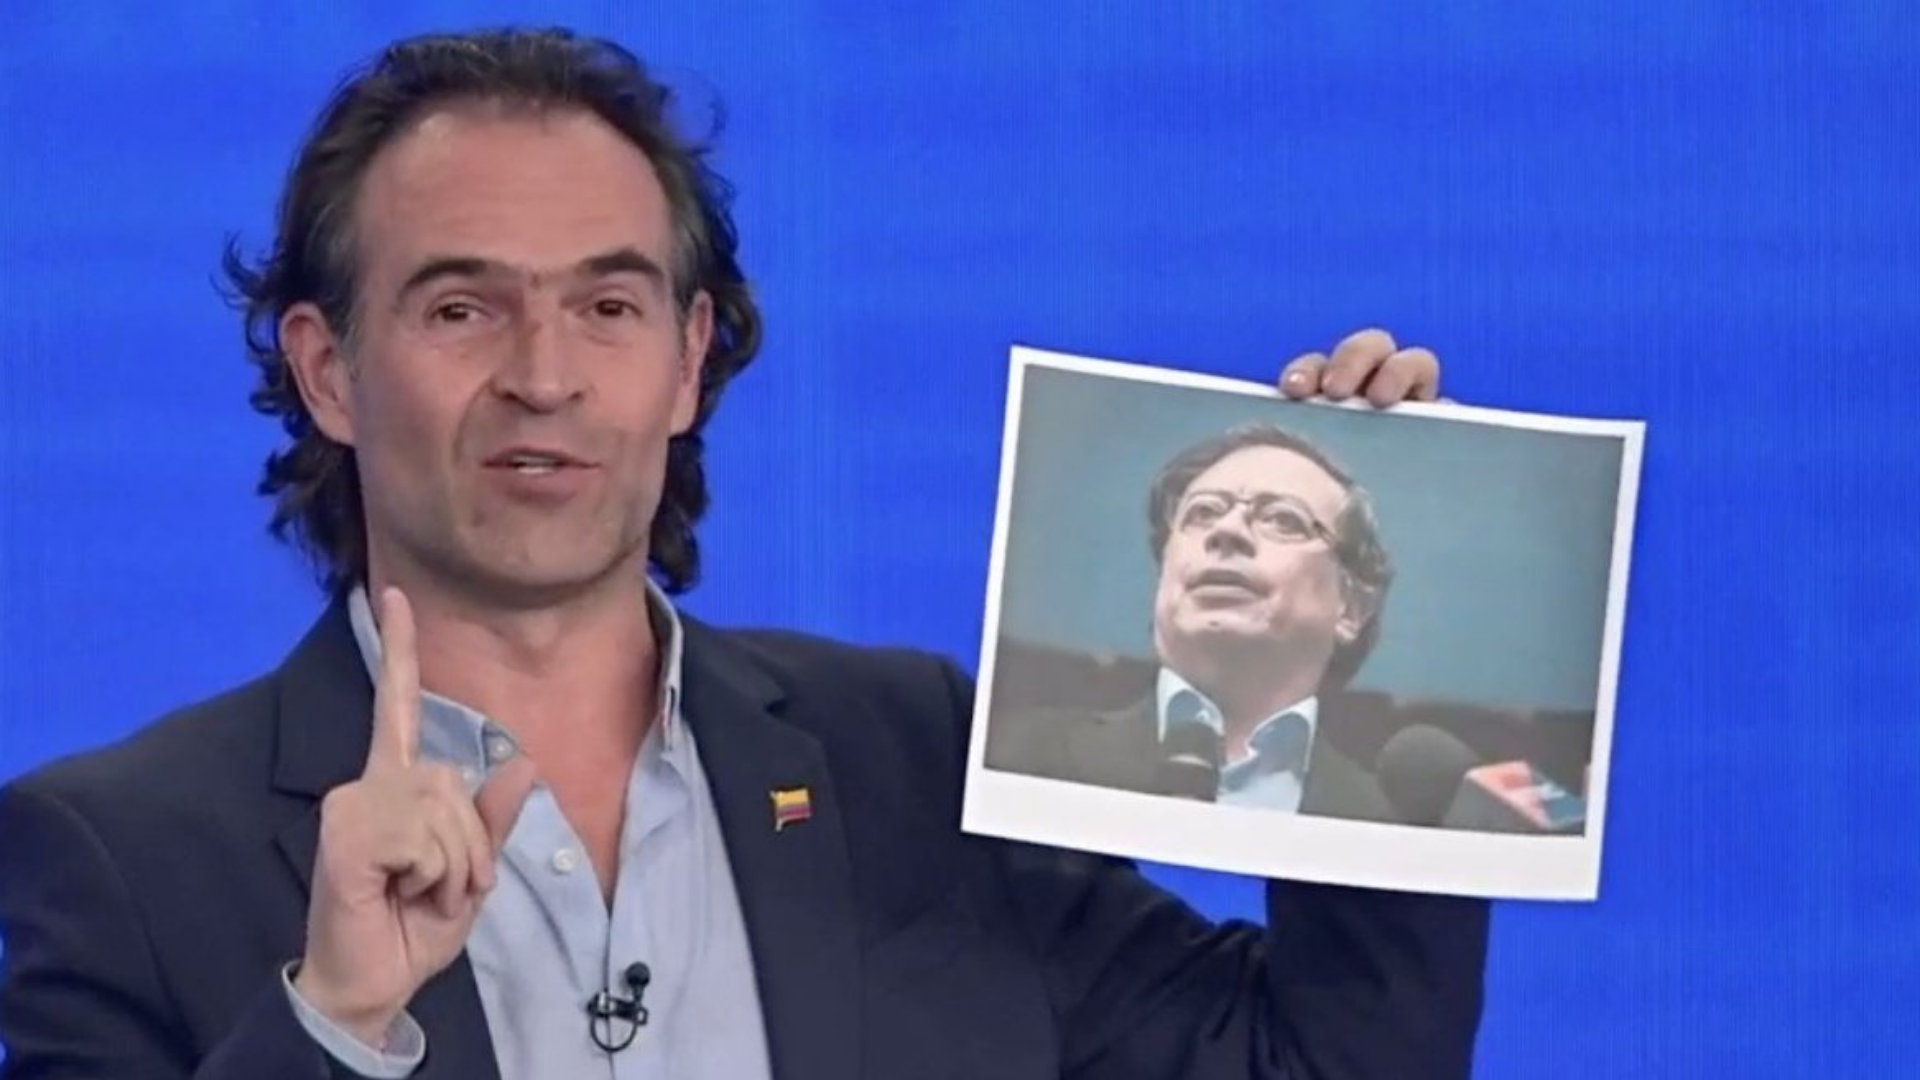 Por qué Fico Gutierrez llevó una foto de Petro al debate? - AS Colombia